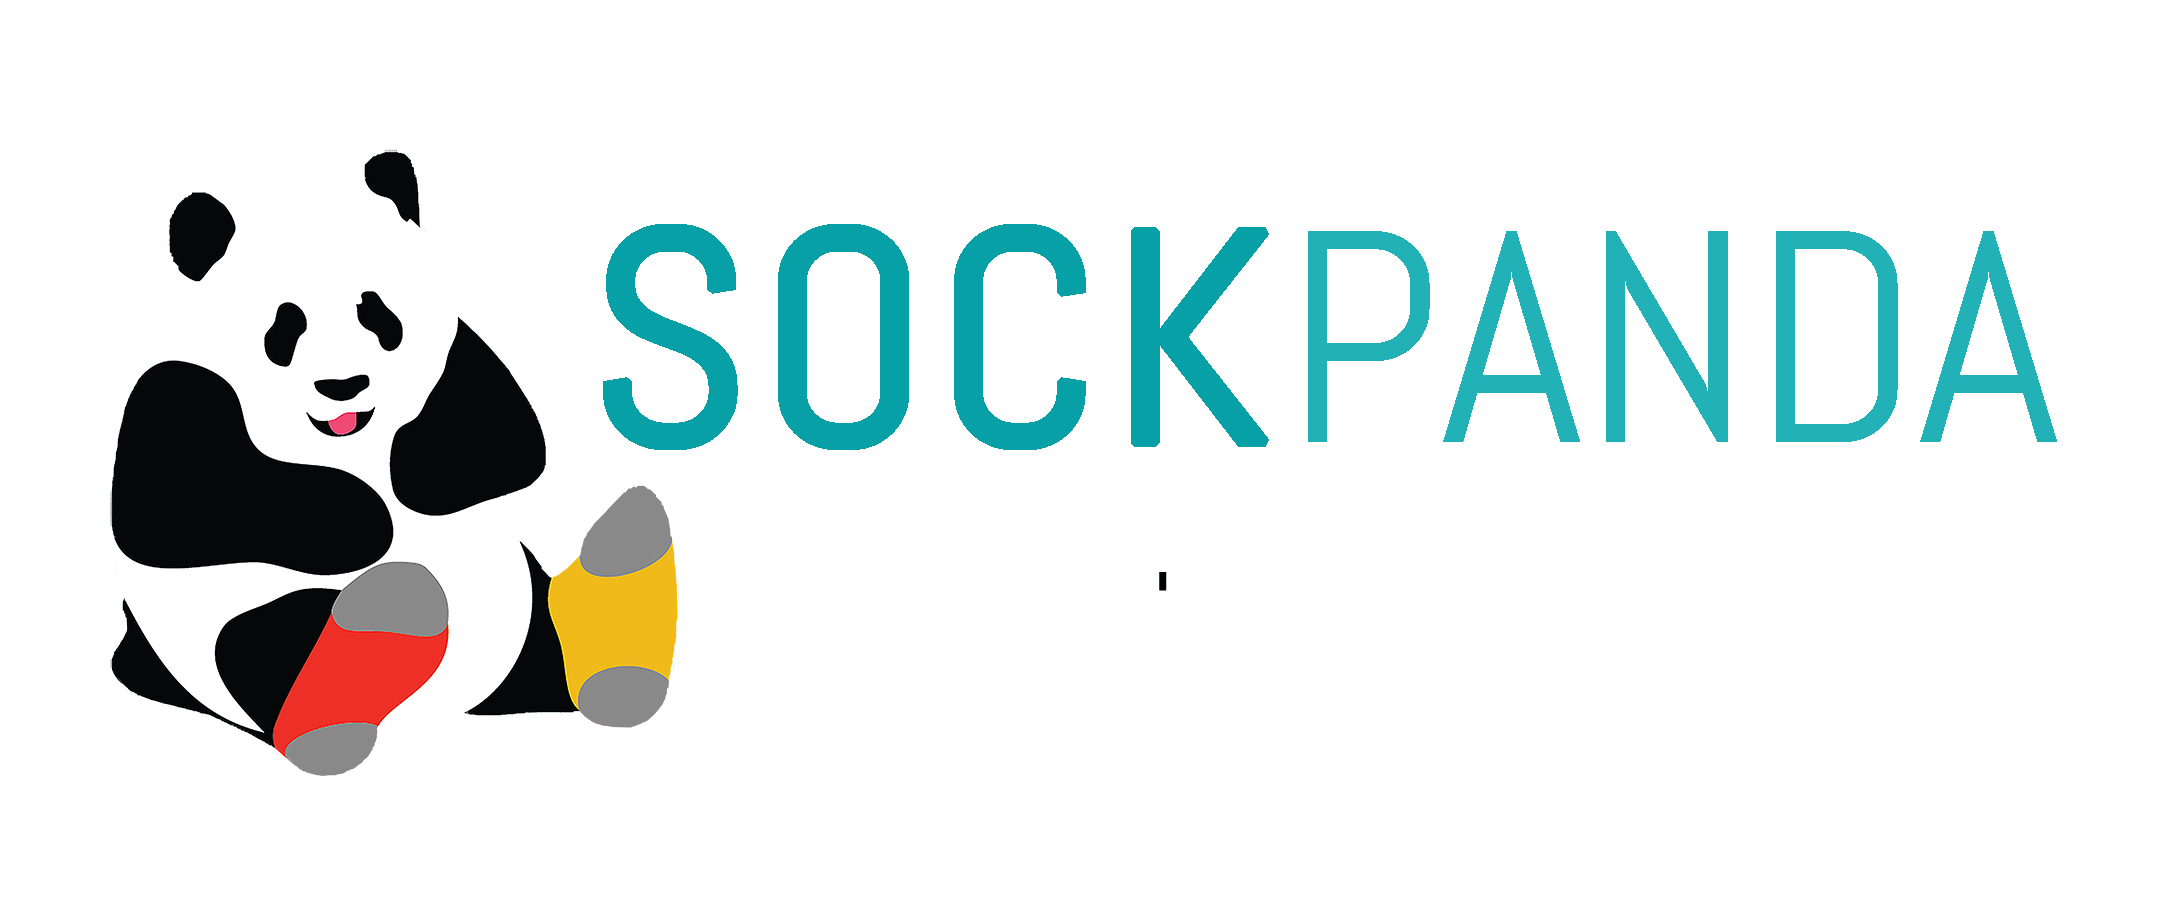 Sock Panda LLC coupon codes, promo codes and deals